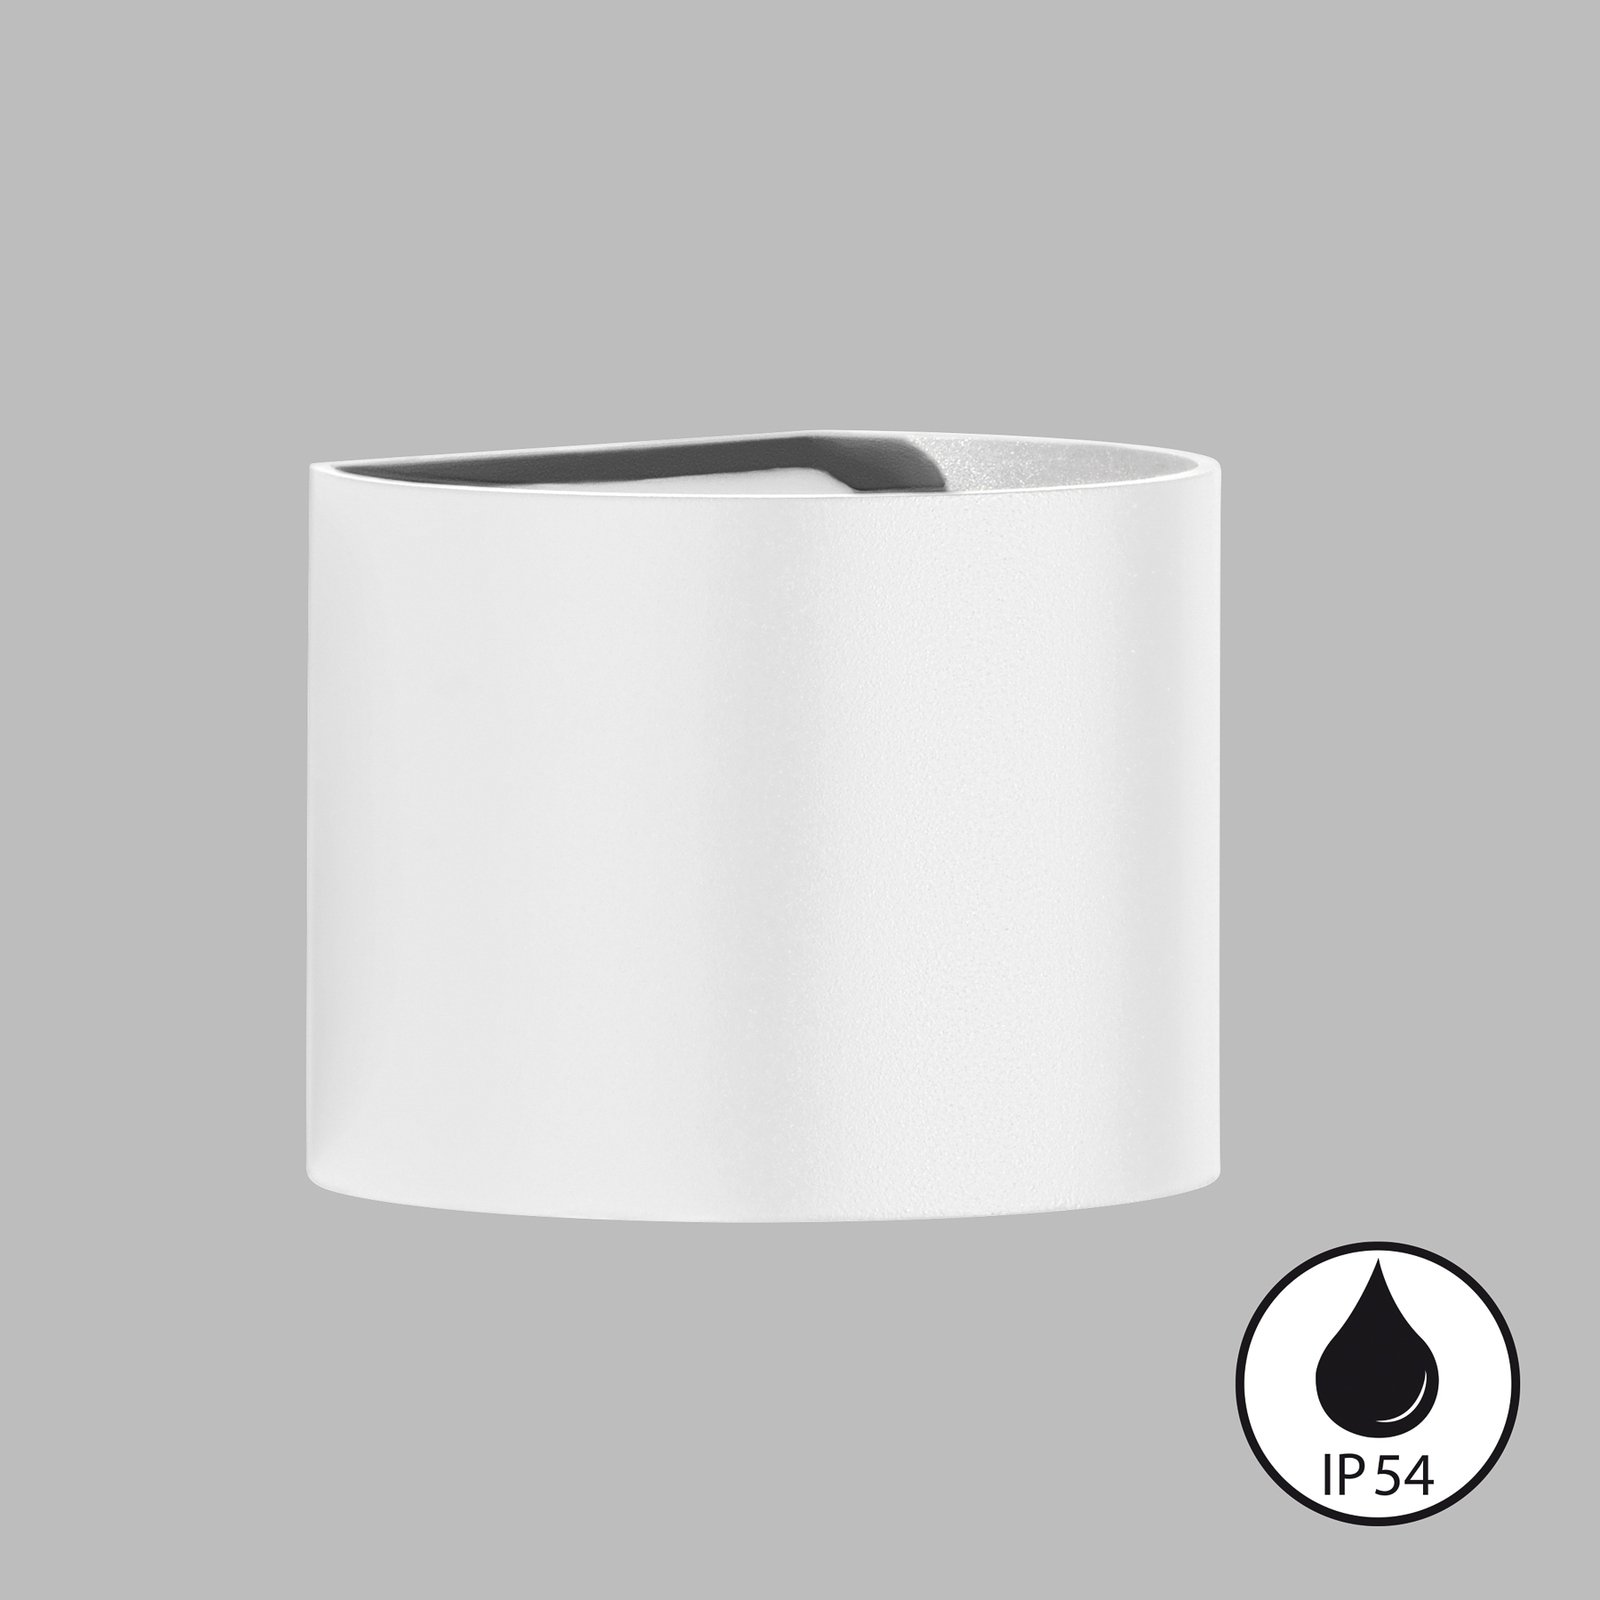 Vonkajšie nástenné svietidlo LED Matteo, biele, šírka 14 cm, 2 svetlá.